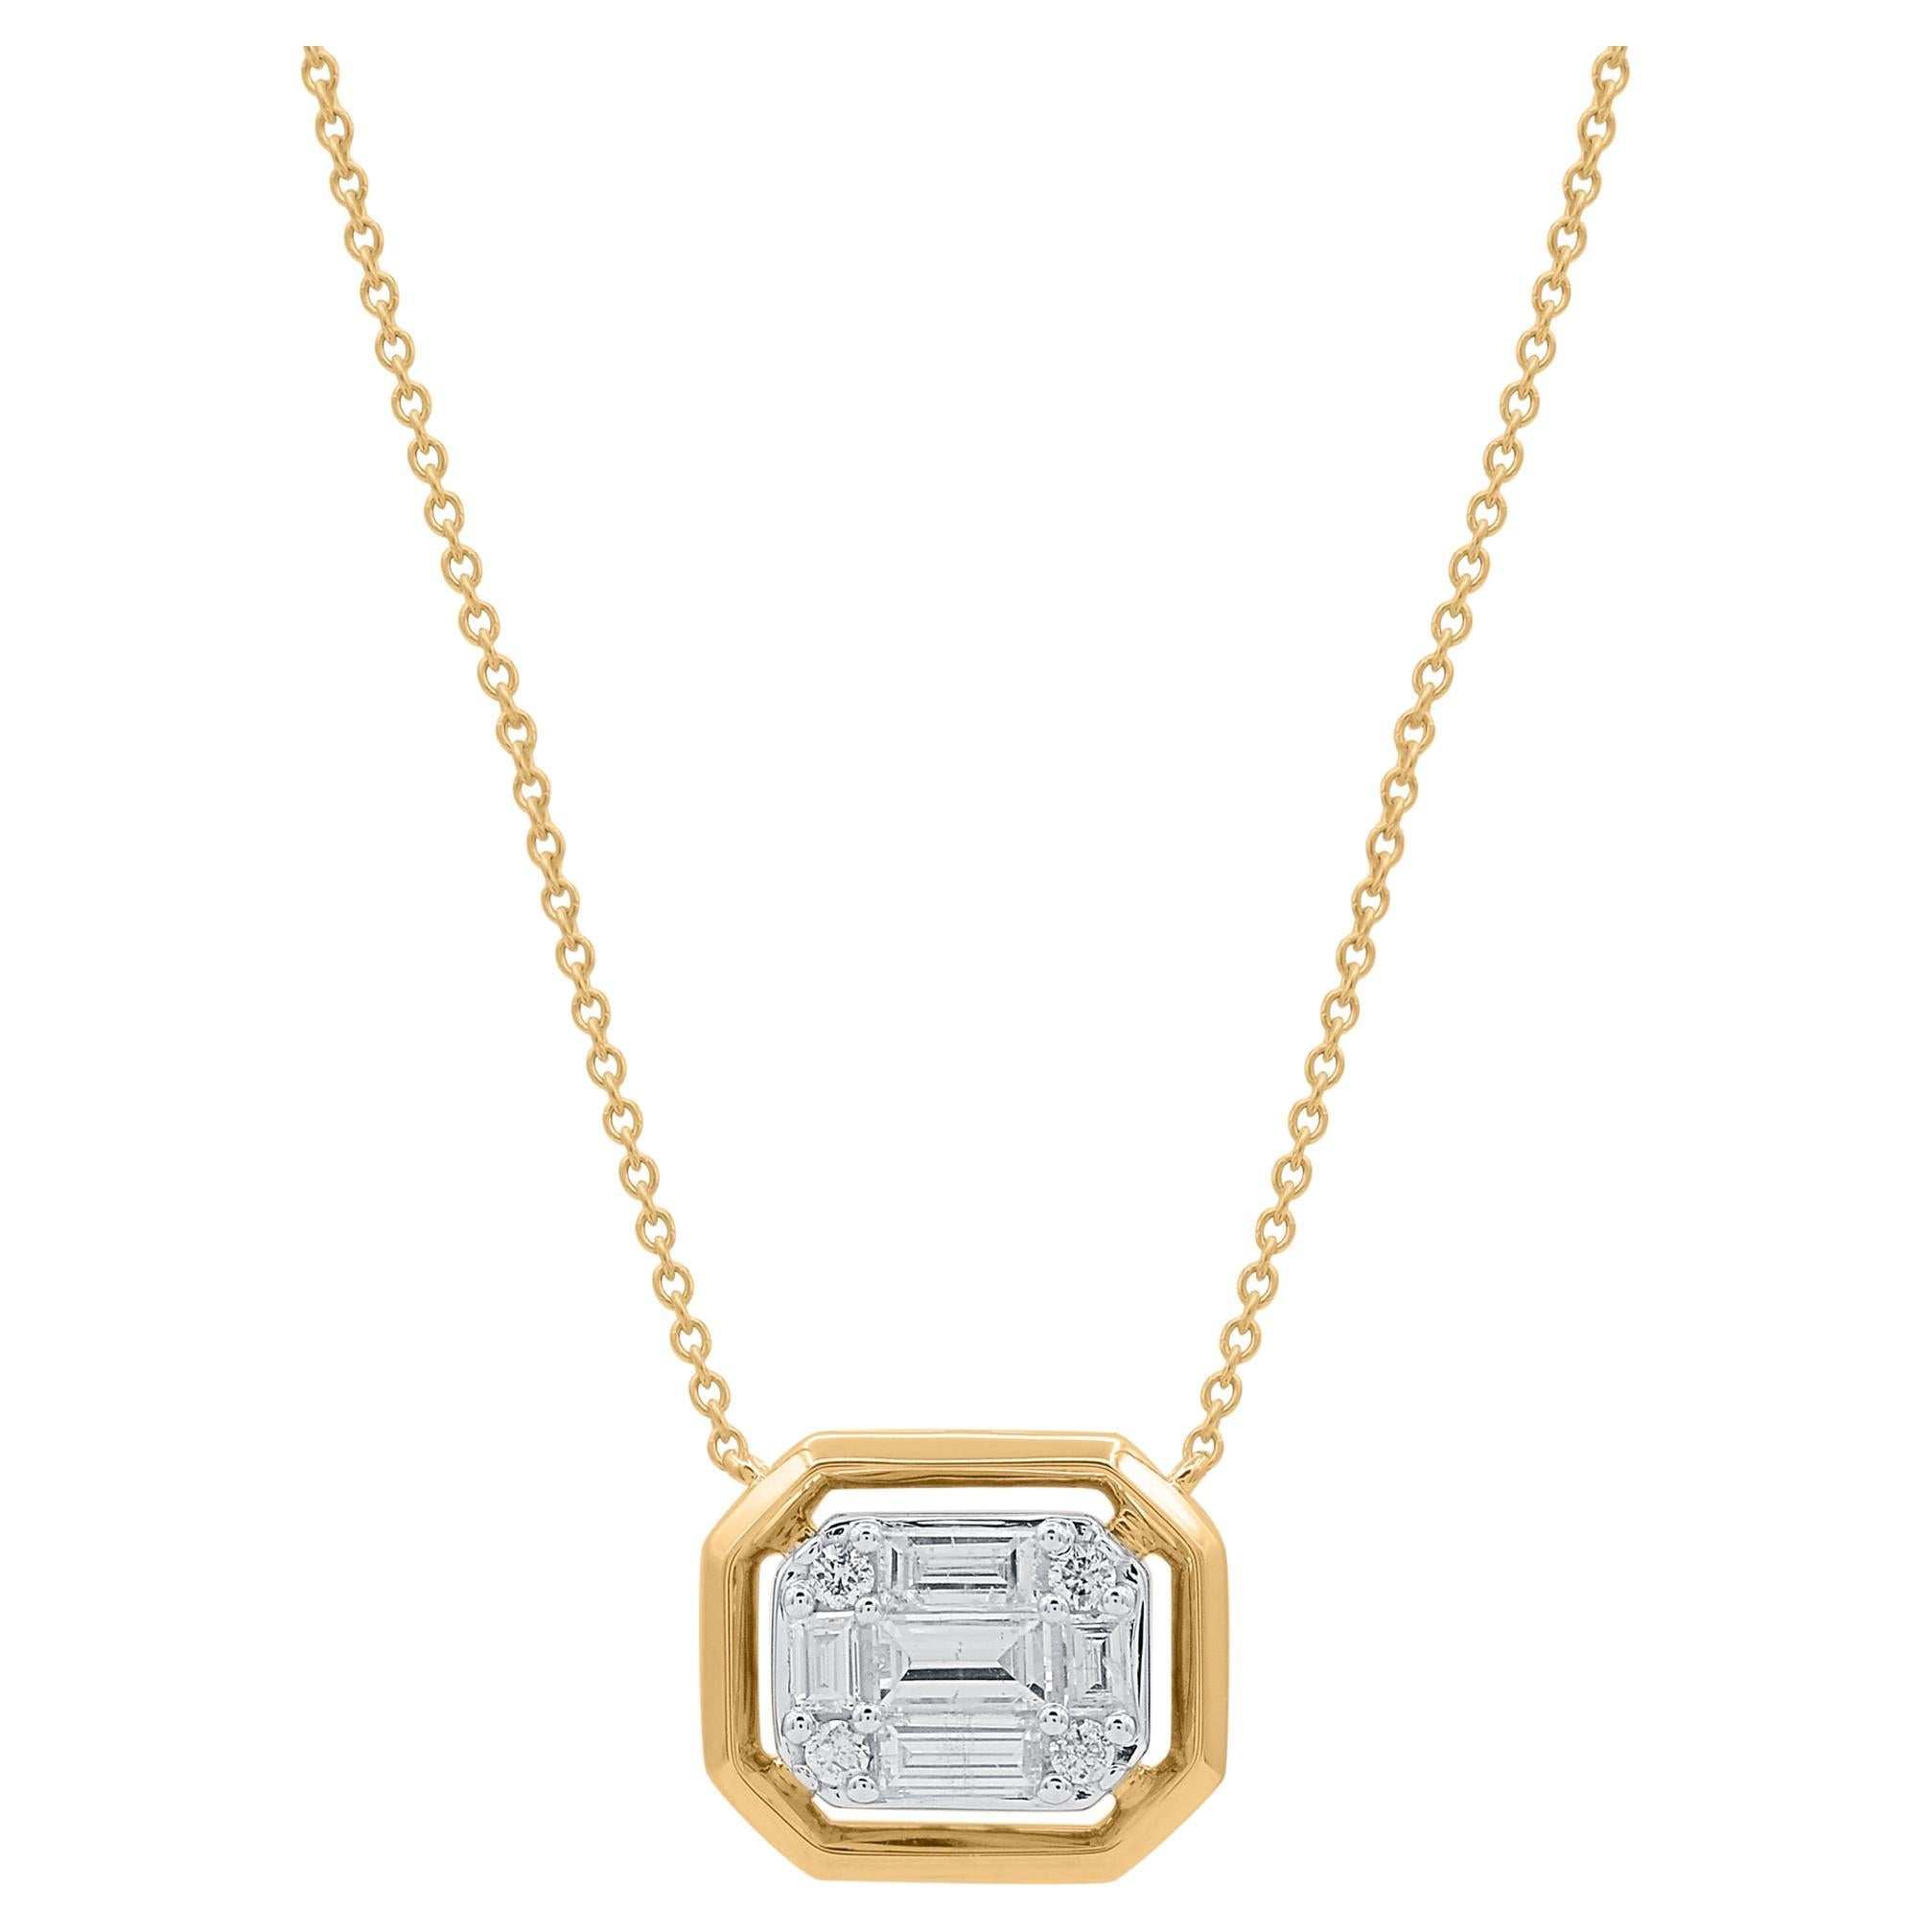 TJD 0.50 Carat Baguette & Brilliant Cut Diamond 18K Yellow Gold Pendant Necklace